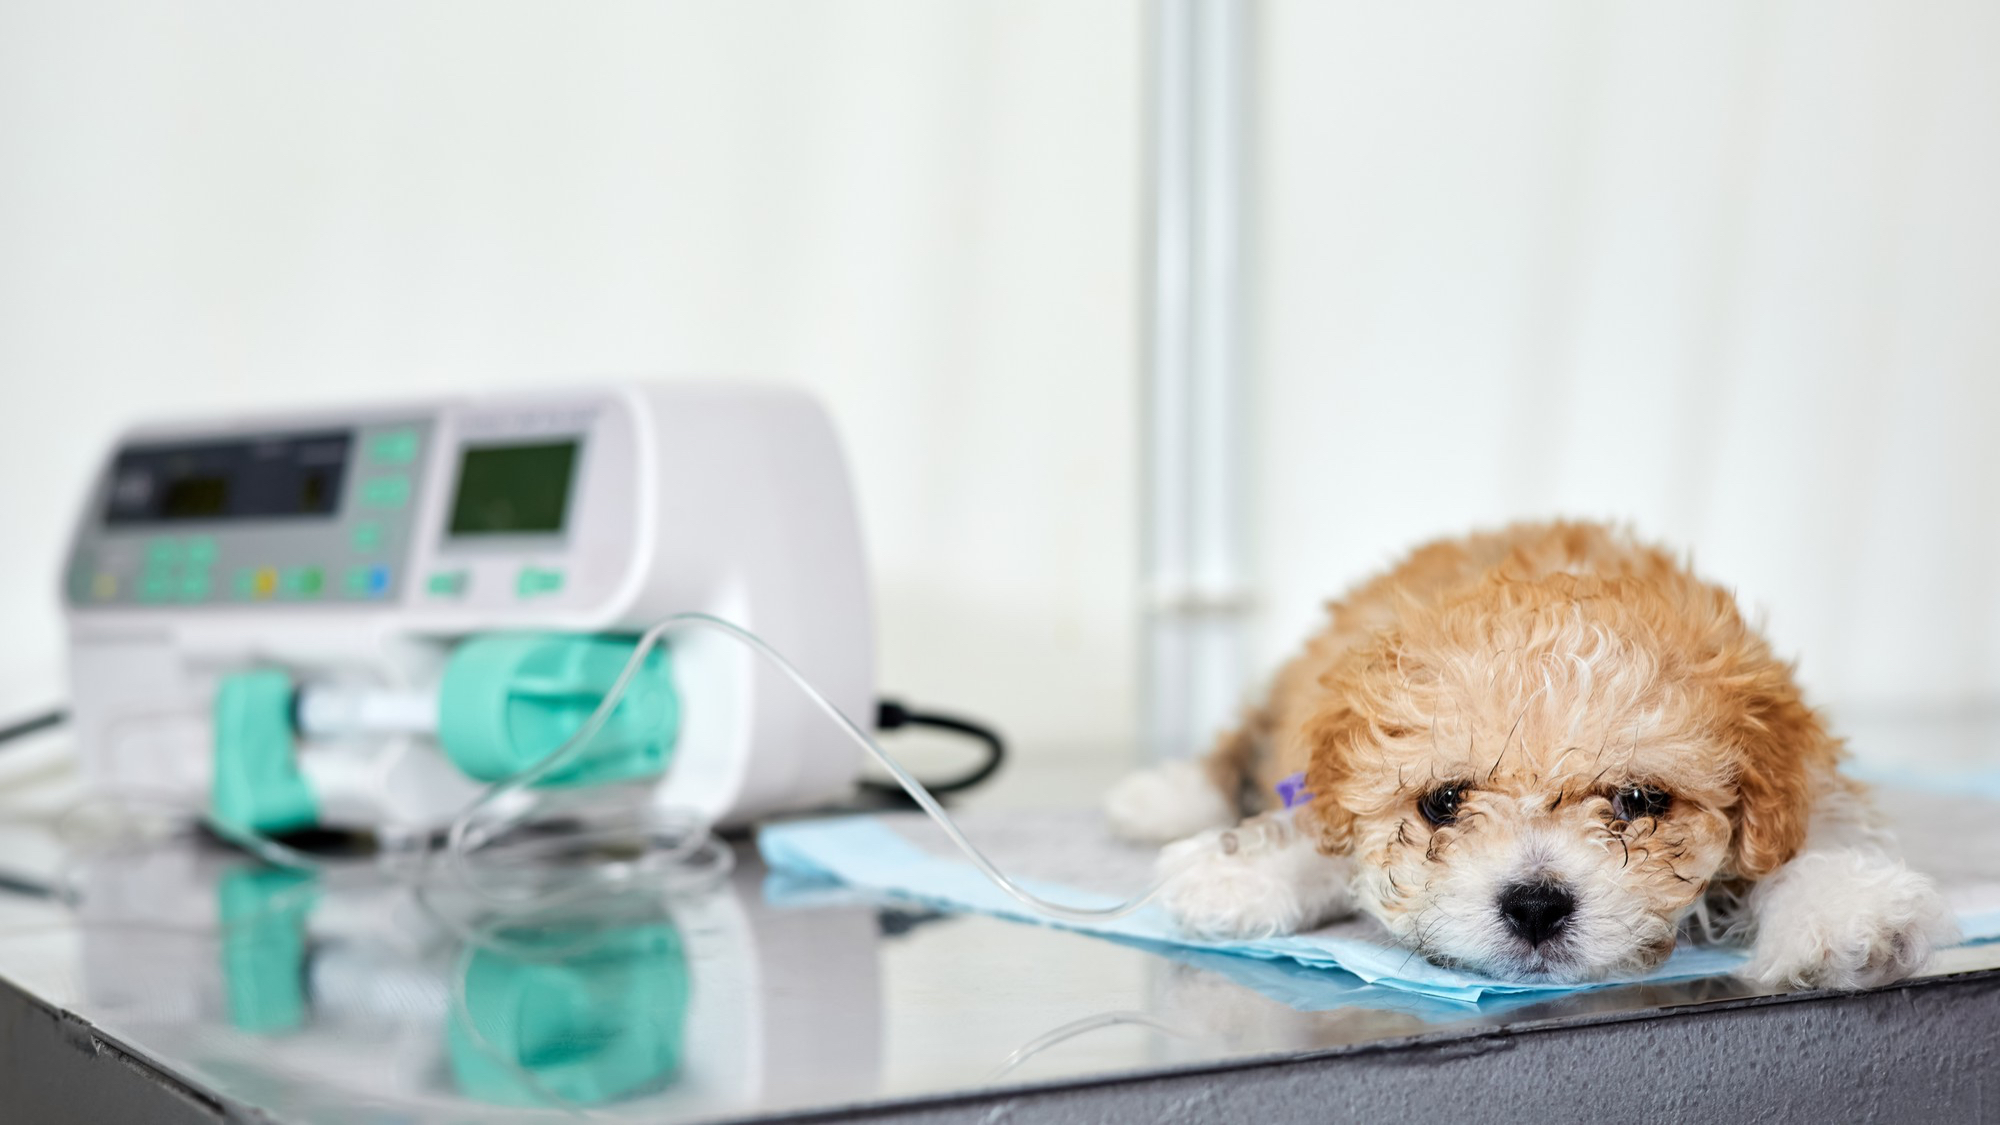 AXON COMUNICACION, Plasma hiperinmune para perros con enteritis parvoviral